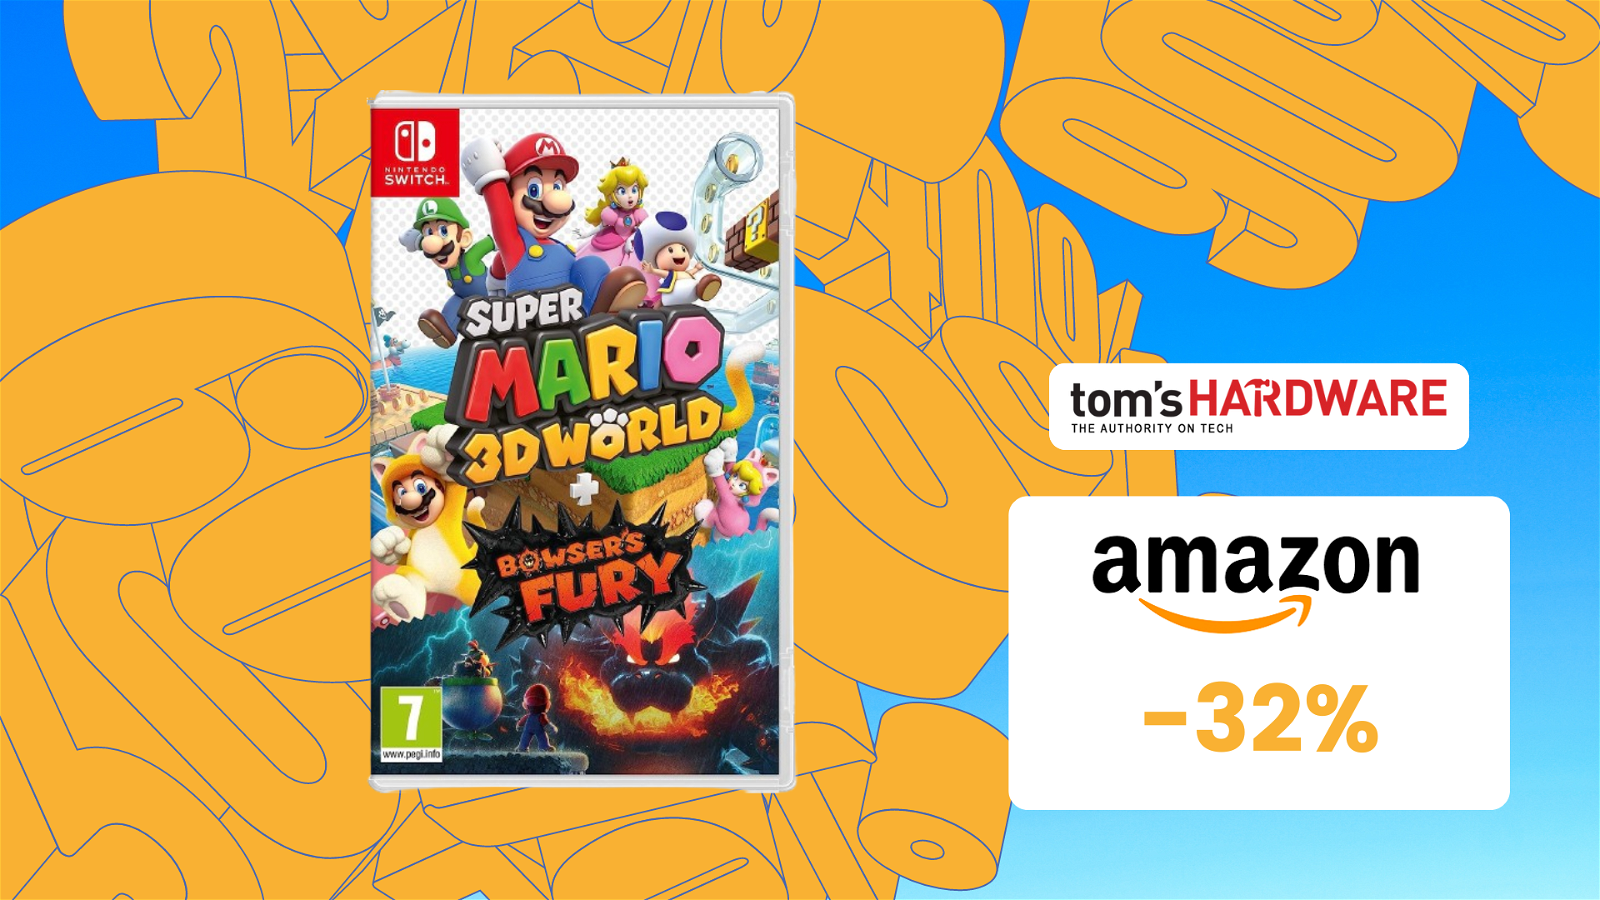 Immagine di Super Mario 3D World + Bowser’s Fury SCONTATISSIMO su Amazon! (-32%)